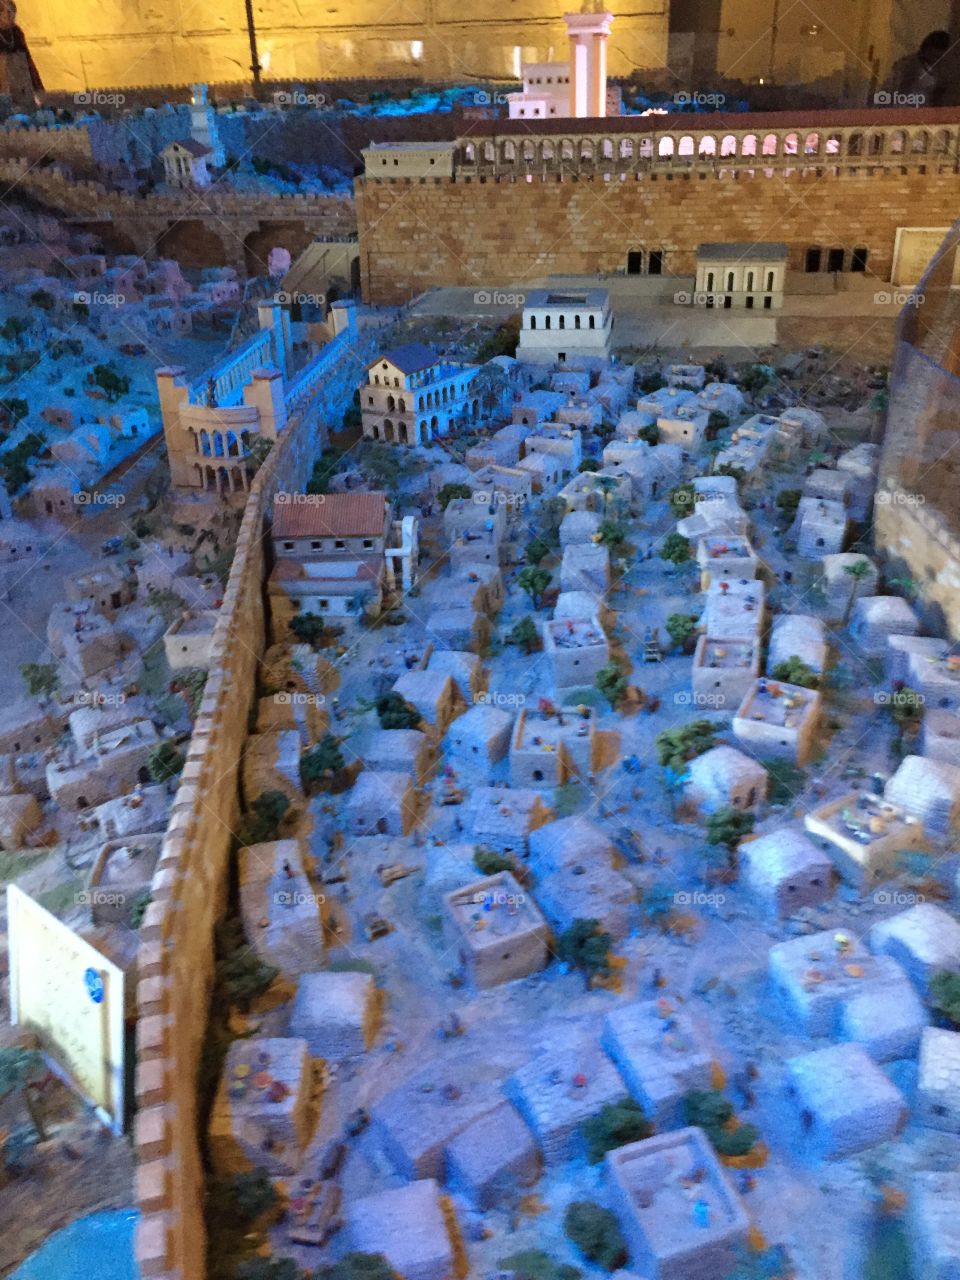 Holy Land Experience Jerusalem Model